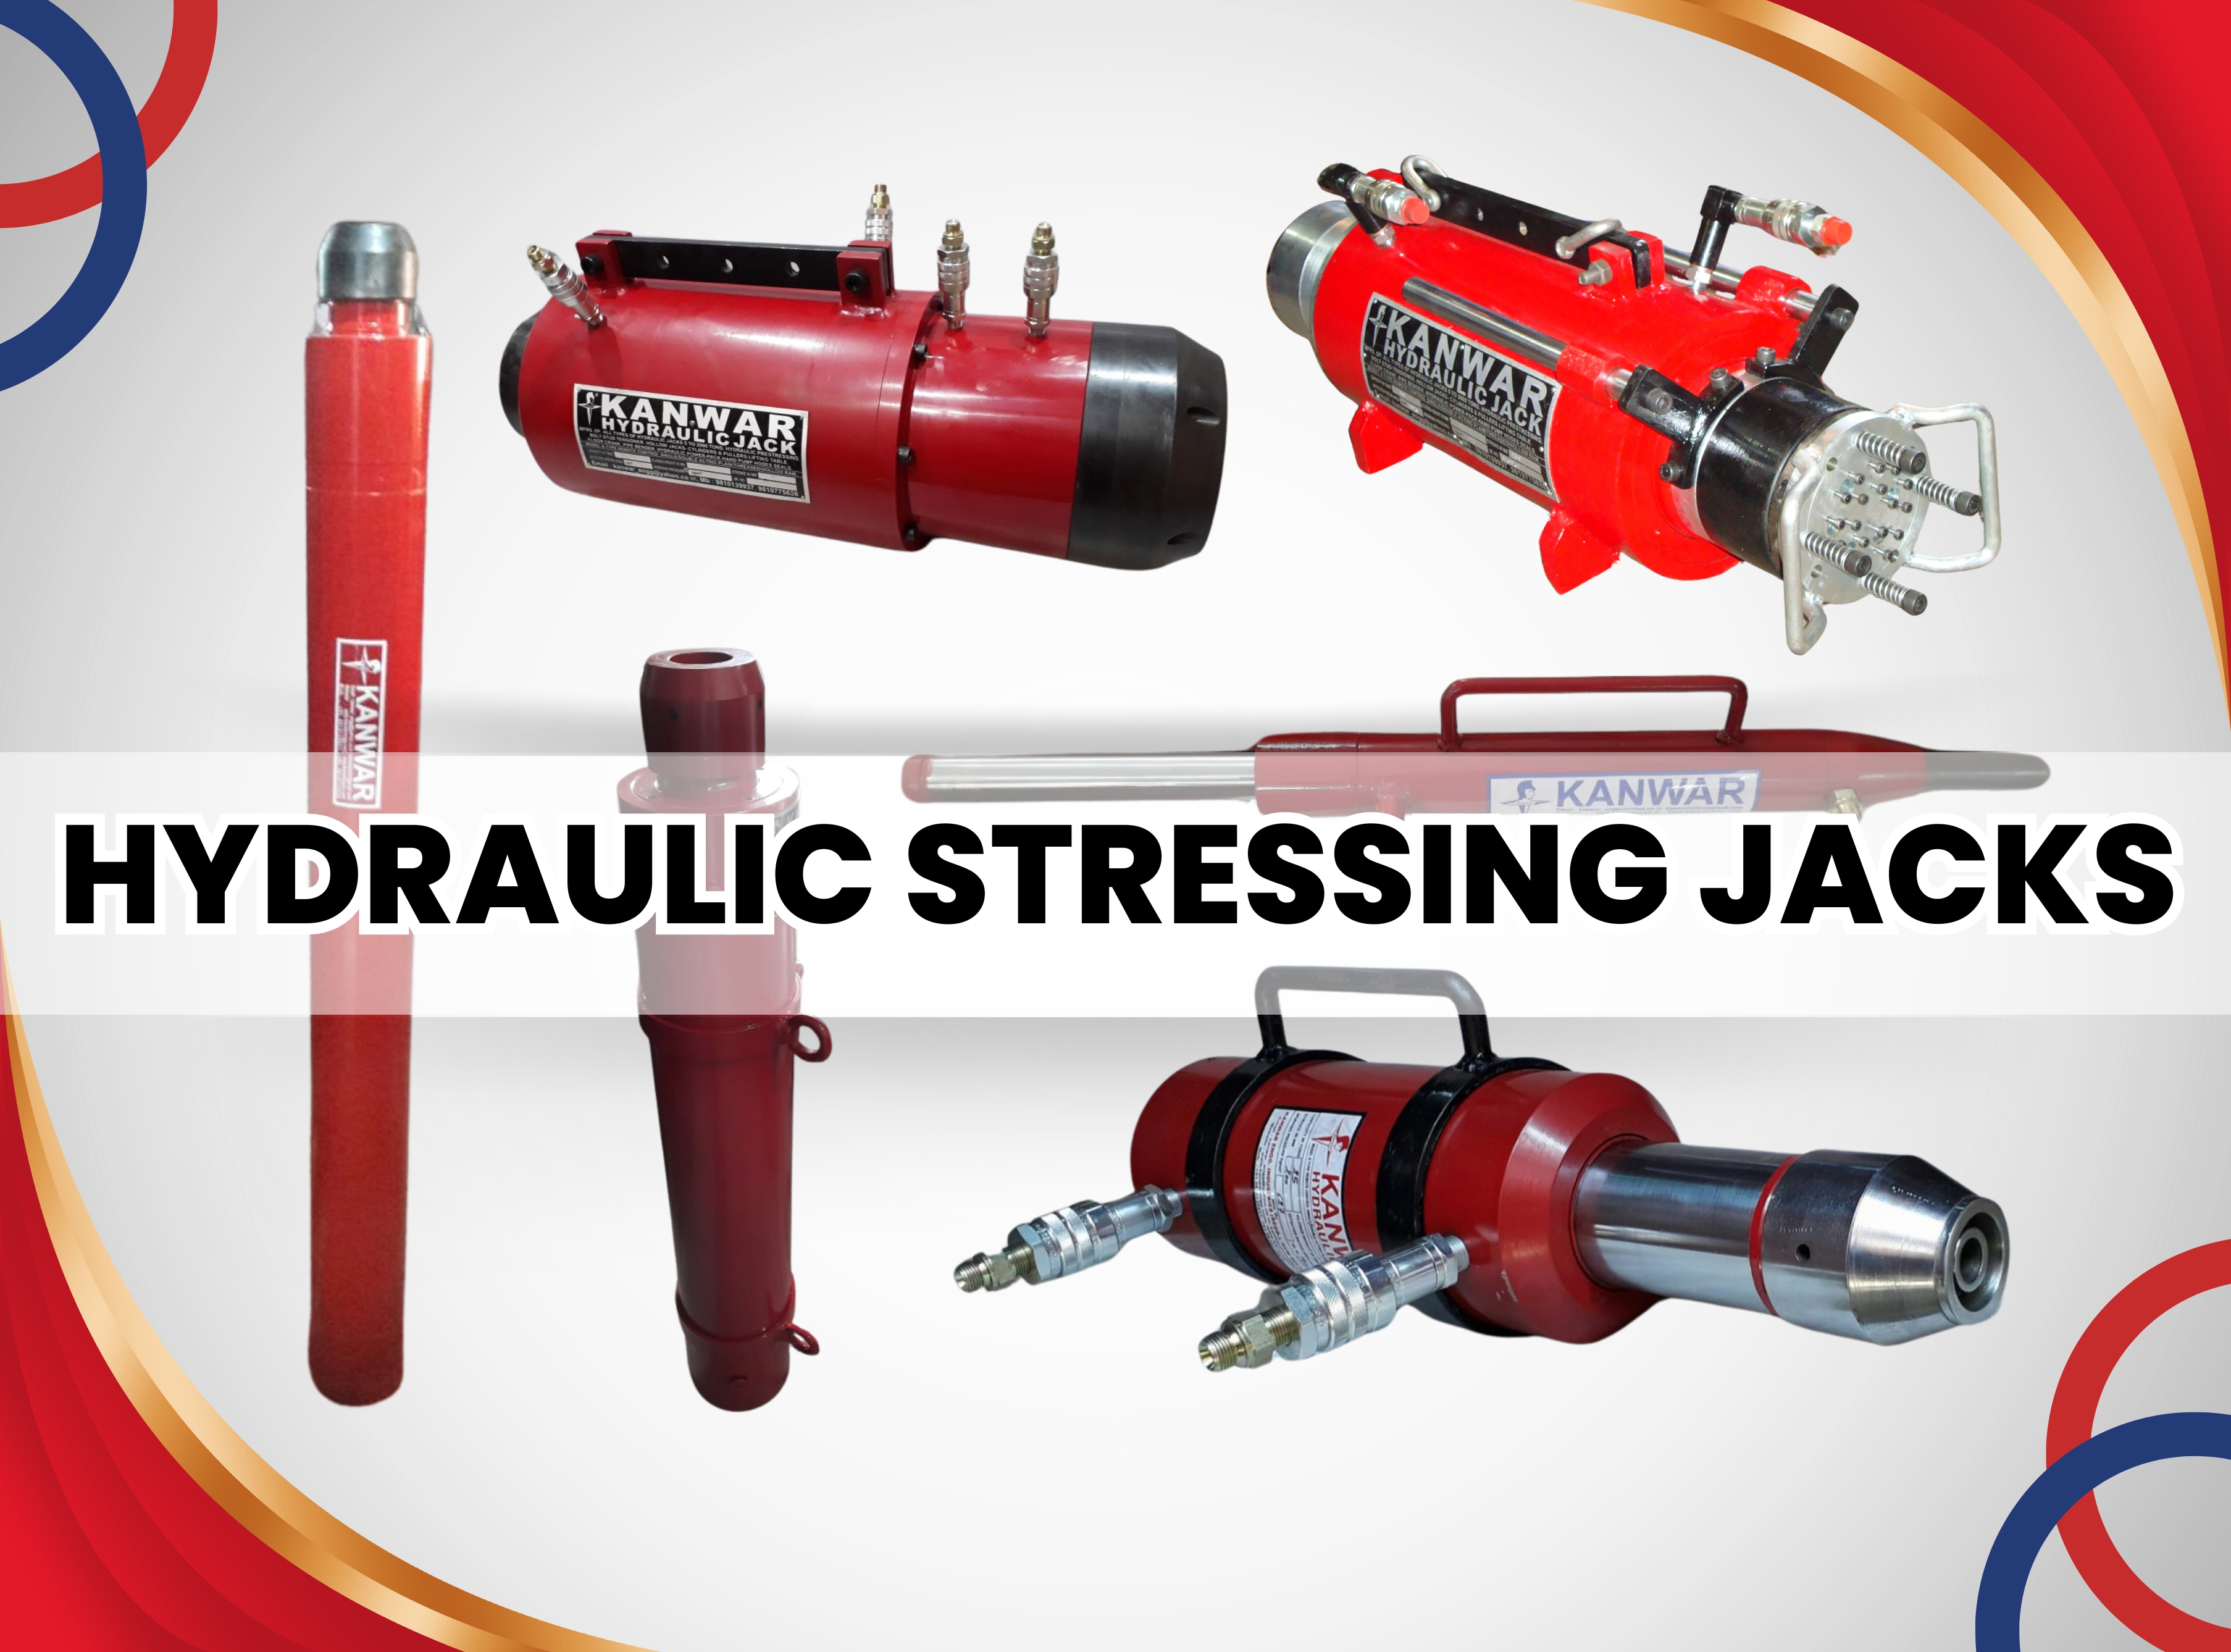 Hydraulic Stressing Jacks